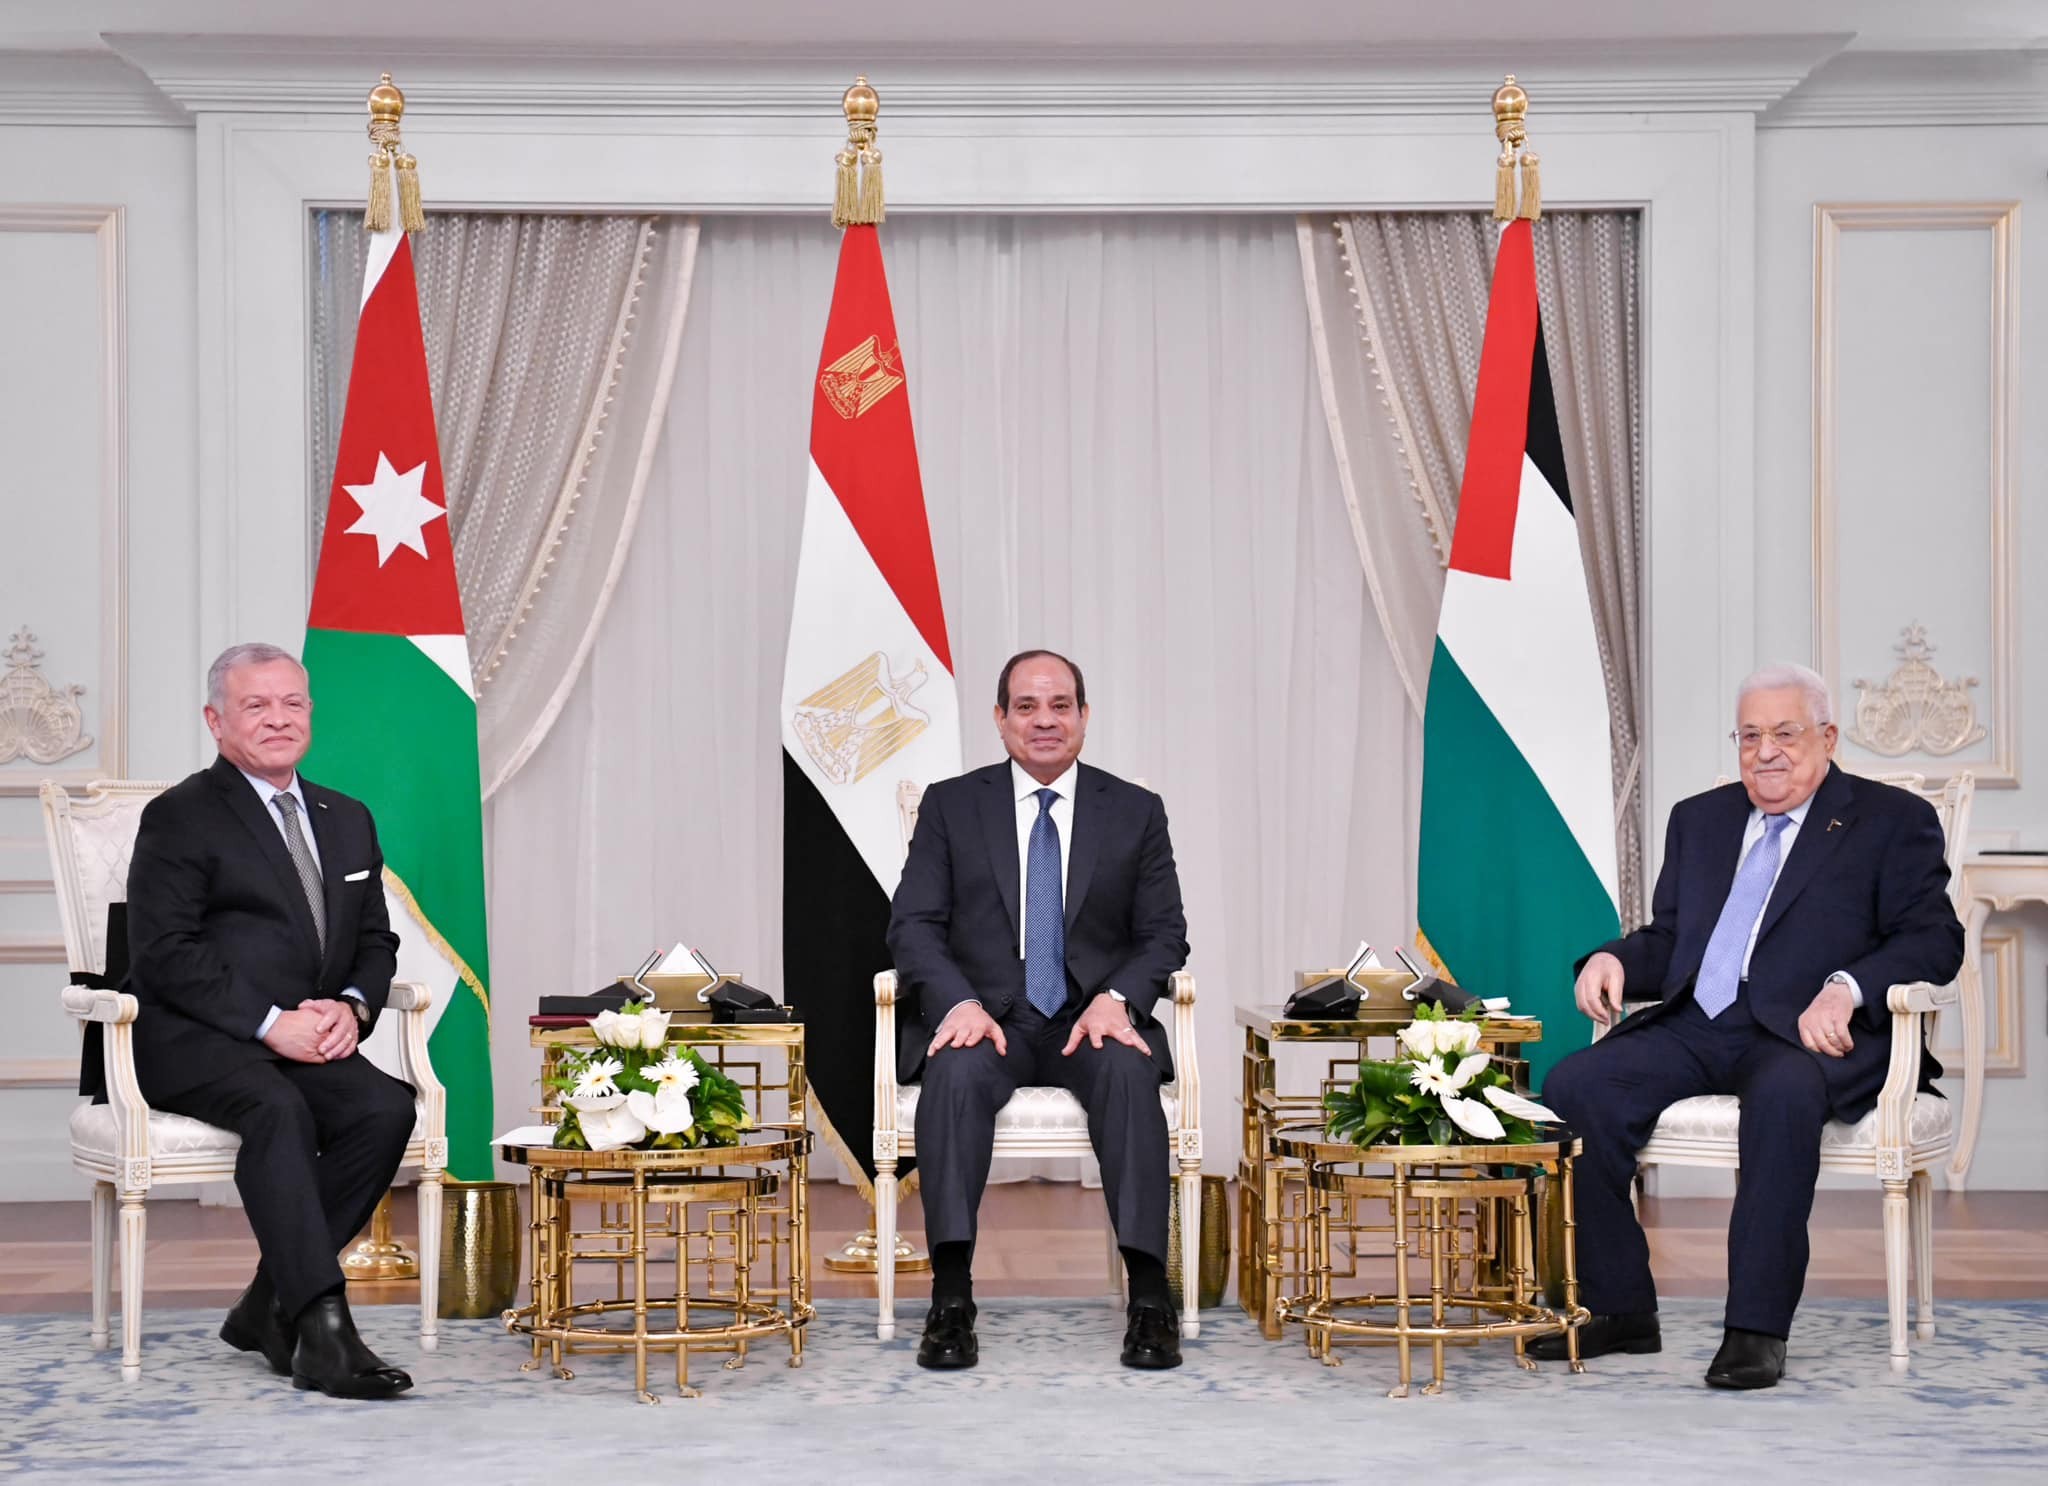 بالصور: تفاصيل البيان الختامي للقمة الثلاثة المصرية الأردنية الفلسطينية